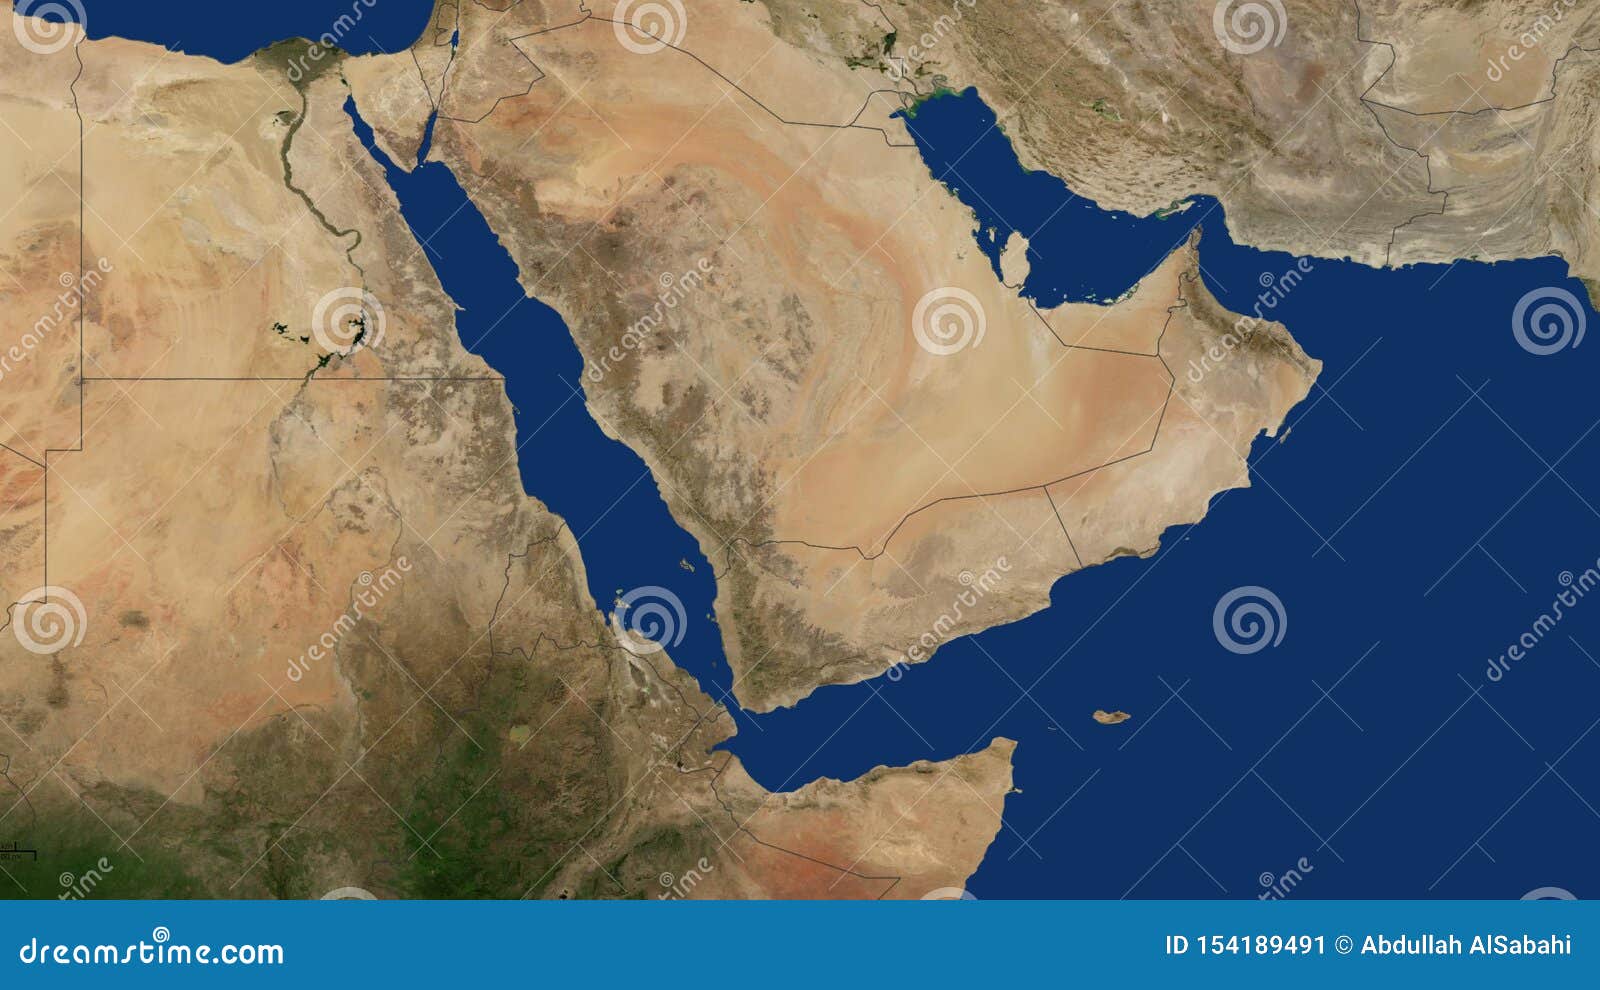 Yemen Map with Borders, Arabia, Oman, Qatar, Emirates, Red Sea, Iran, Persian Gulf, Arabian Gulf, Iraq, Jordan Image - Image of djibouti, persian: 154189491